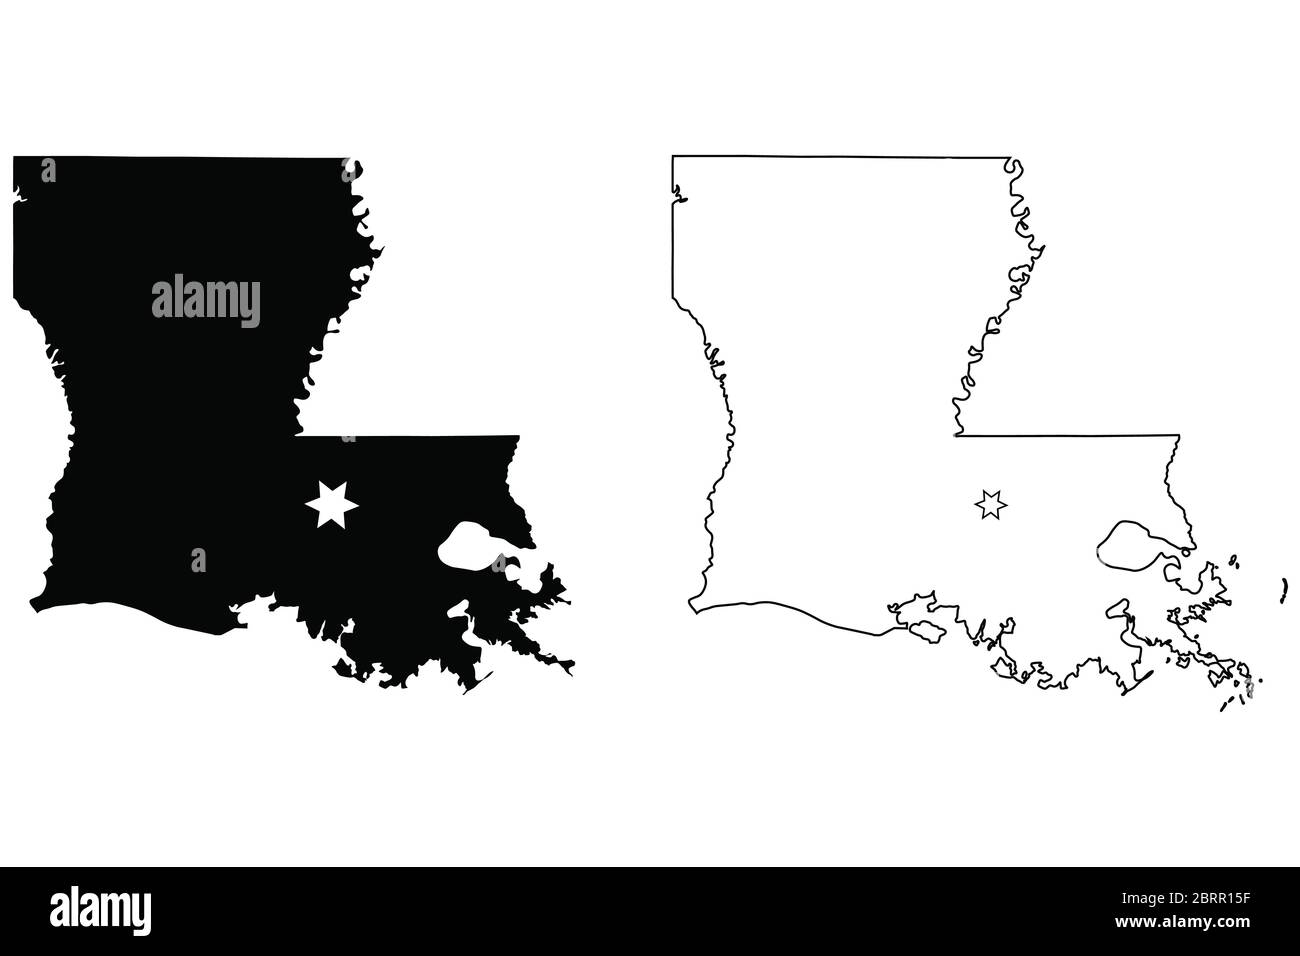 Louisiana LA State Karte USA mit Capital City Star in Baton Rouge. Schwarze Silhouette und Umriss isoliert auf weißem Hintergrund. EPS-Vektor Stock Vektor